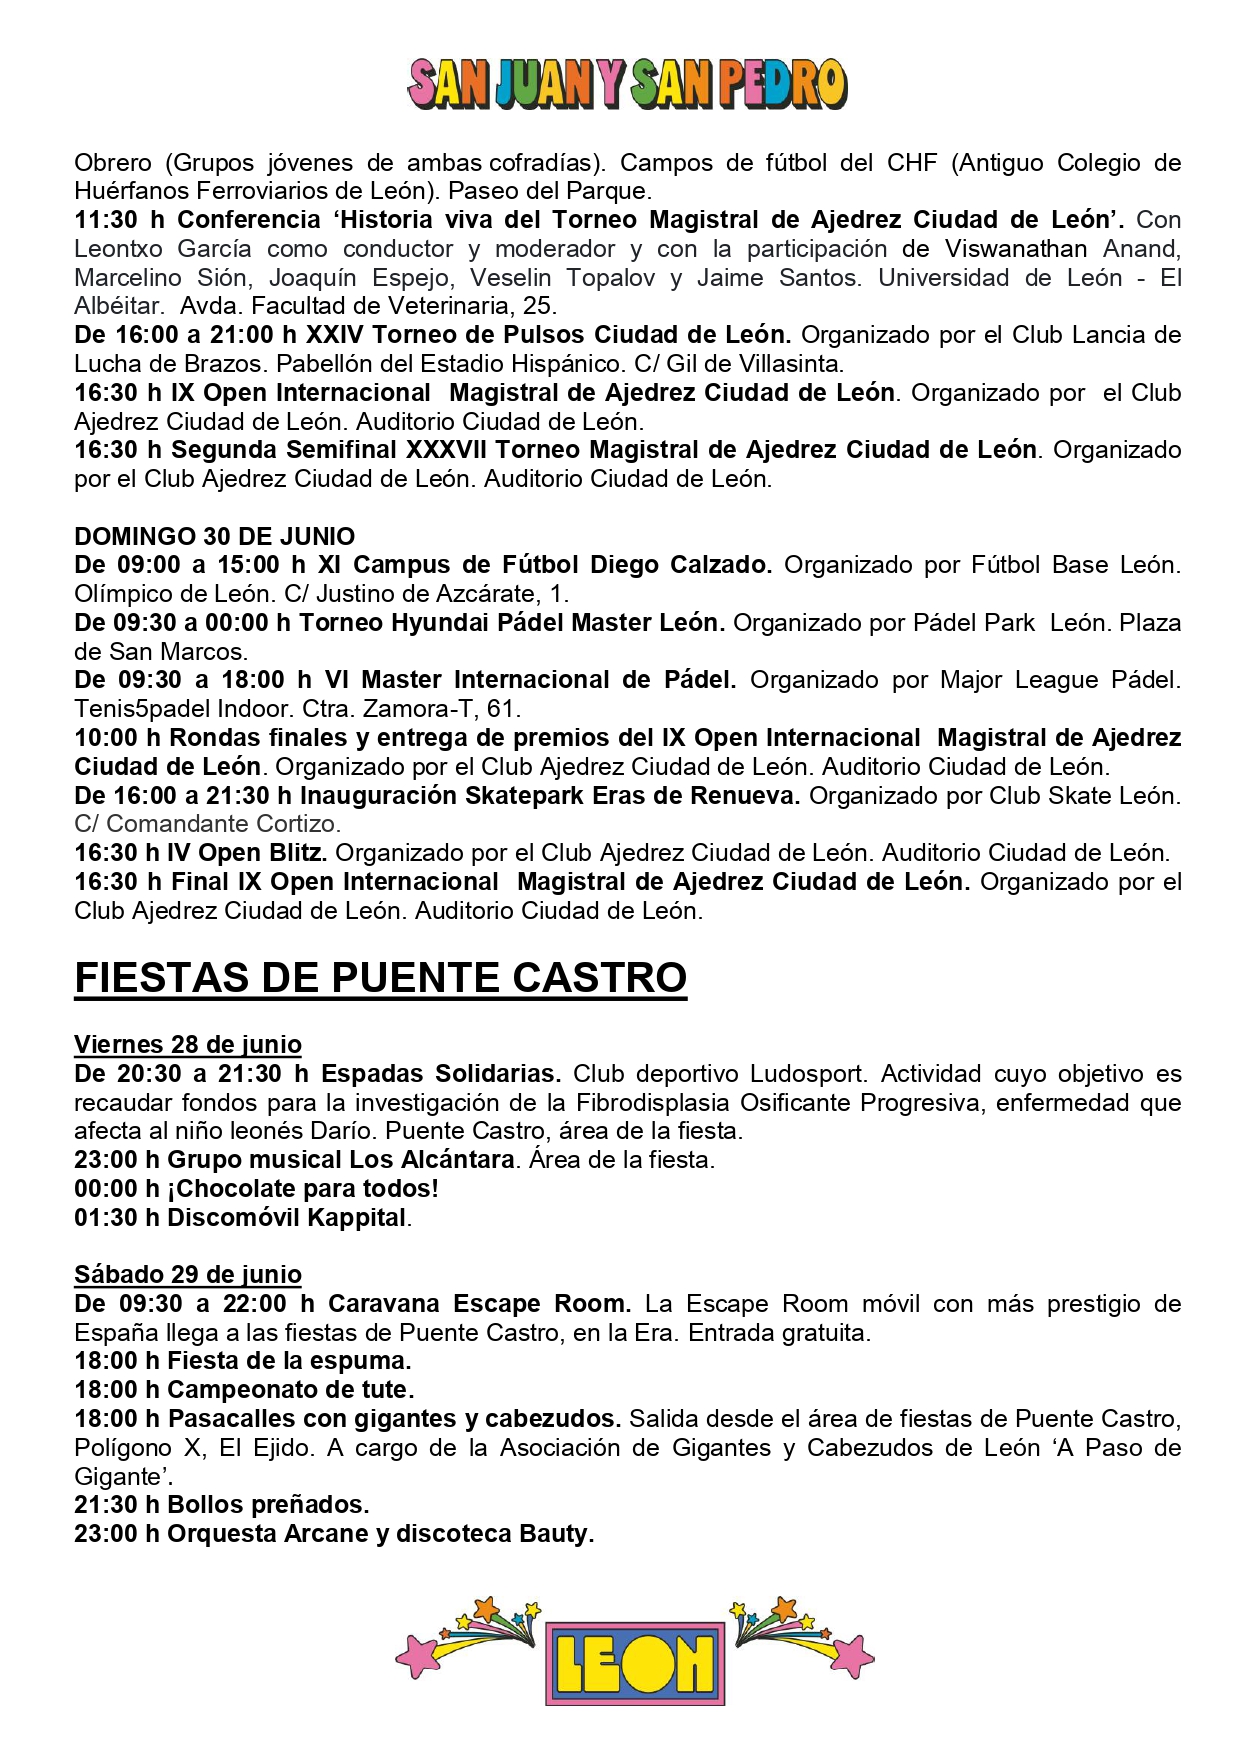 Programa de Fiestas San Juan y San Pedro en León, conciertos, deportes y todas las actividades 22